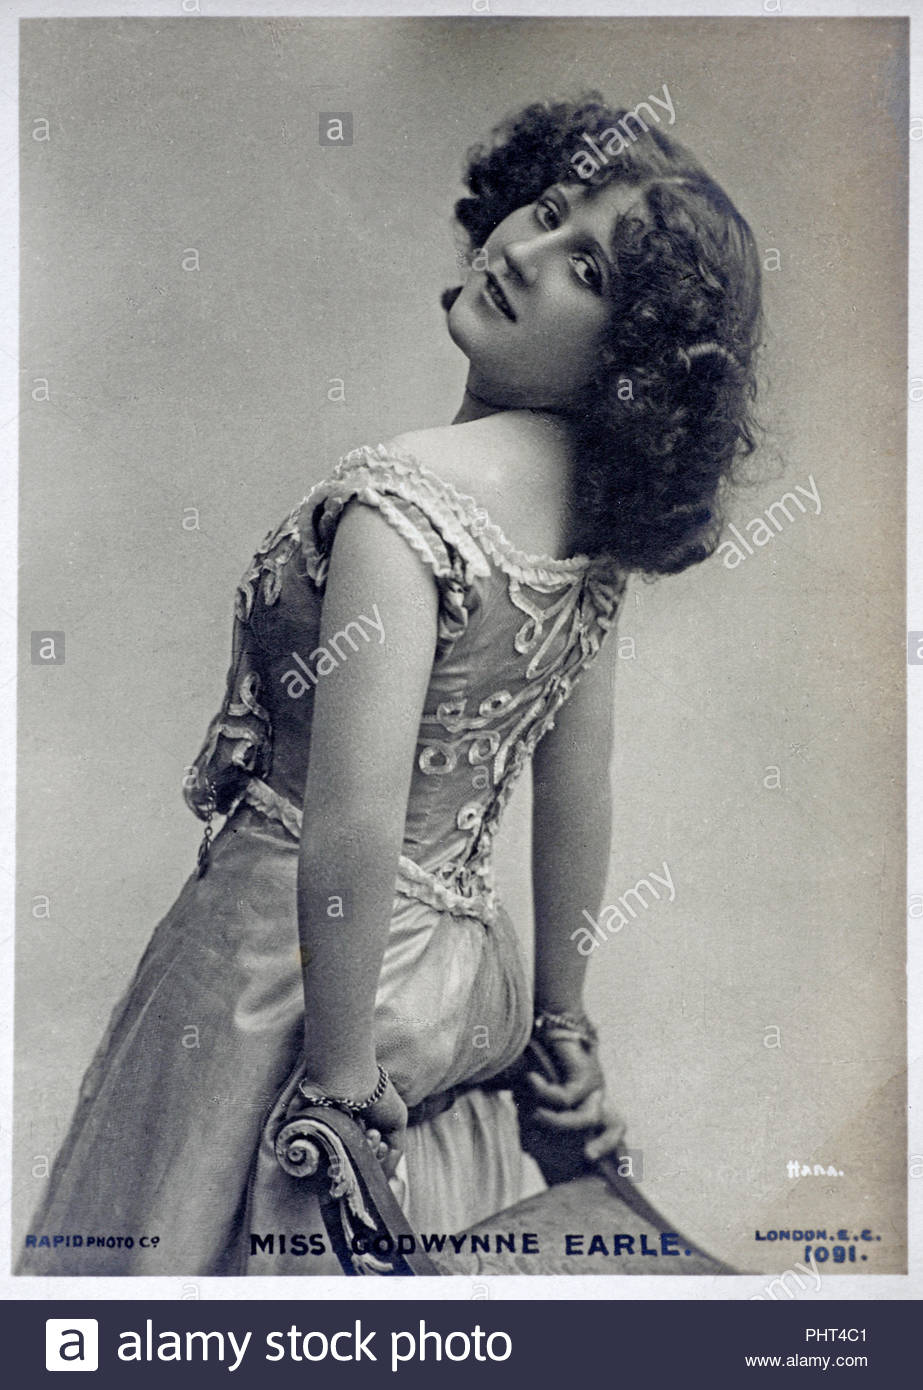 Godwynne Earle portrait, était une actrice, danseuse et chanteuse, vintage real photo carte postale de 1905 Banque D'Images